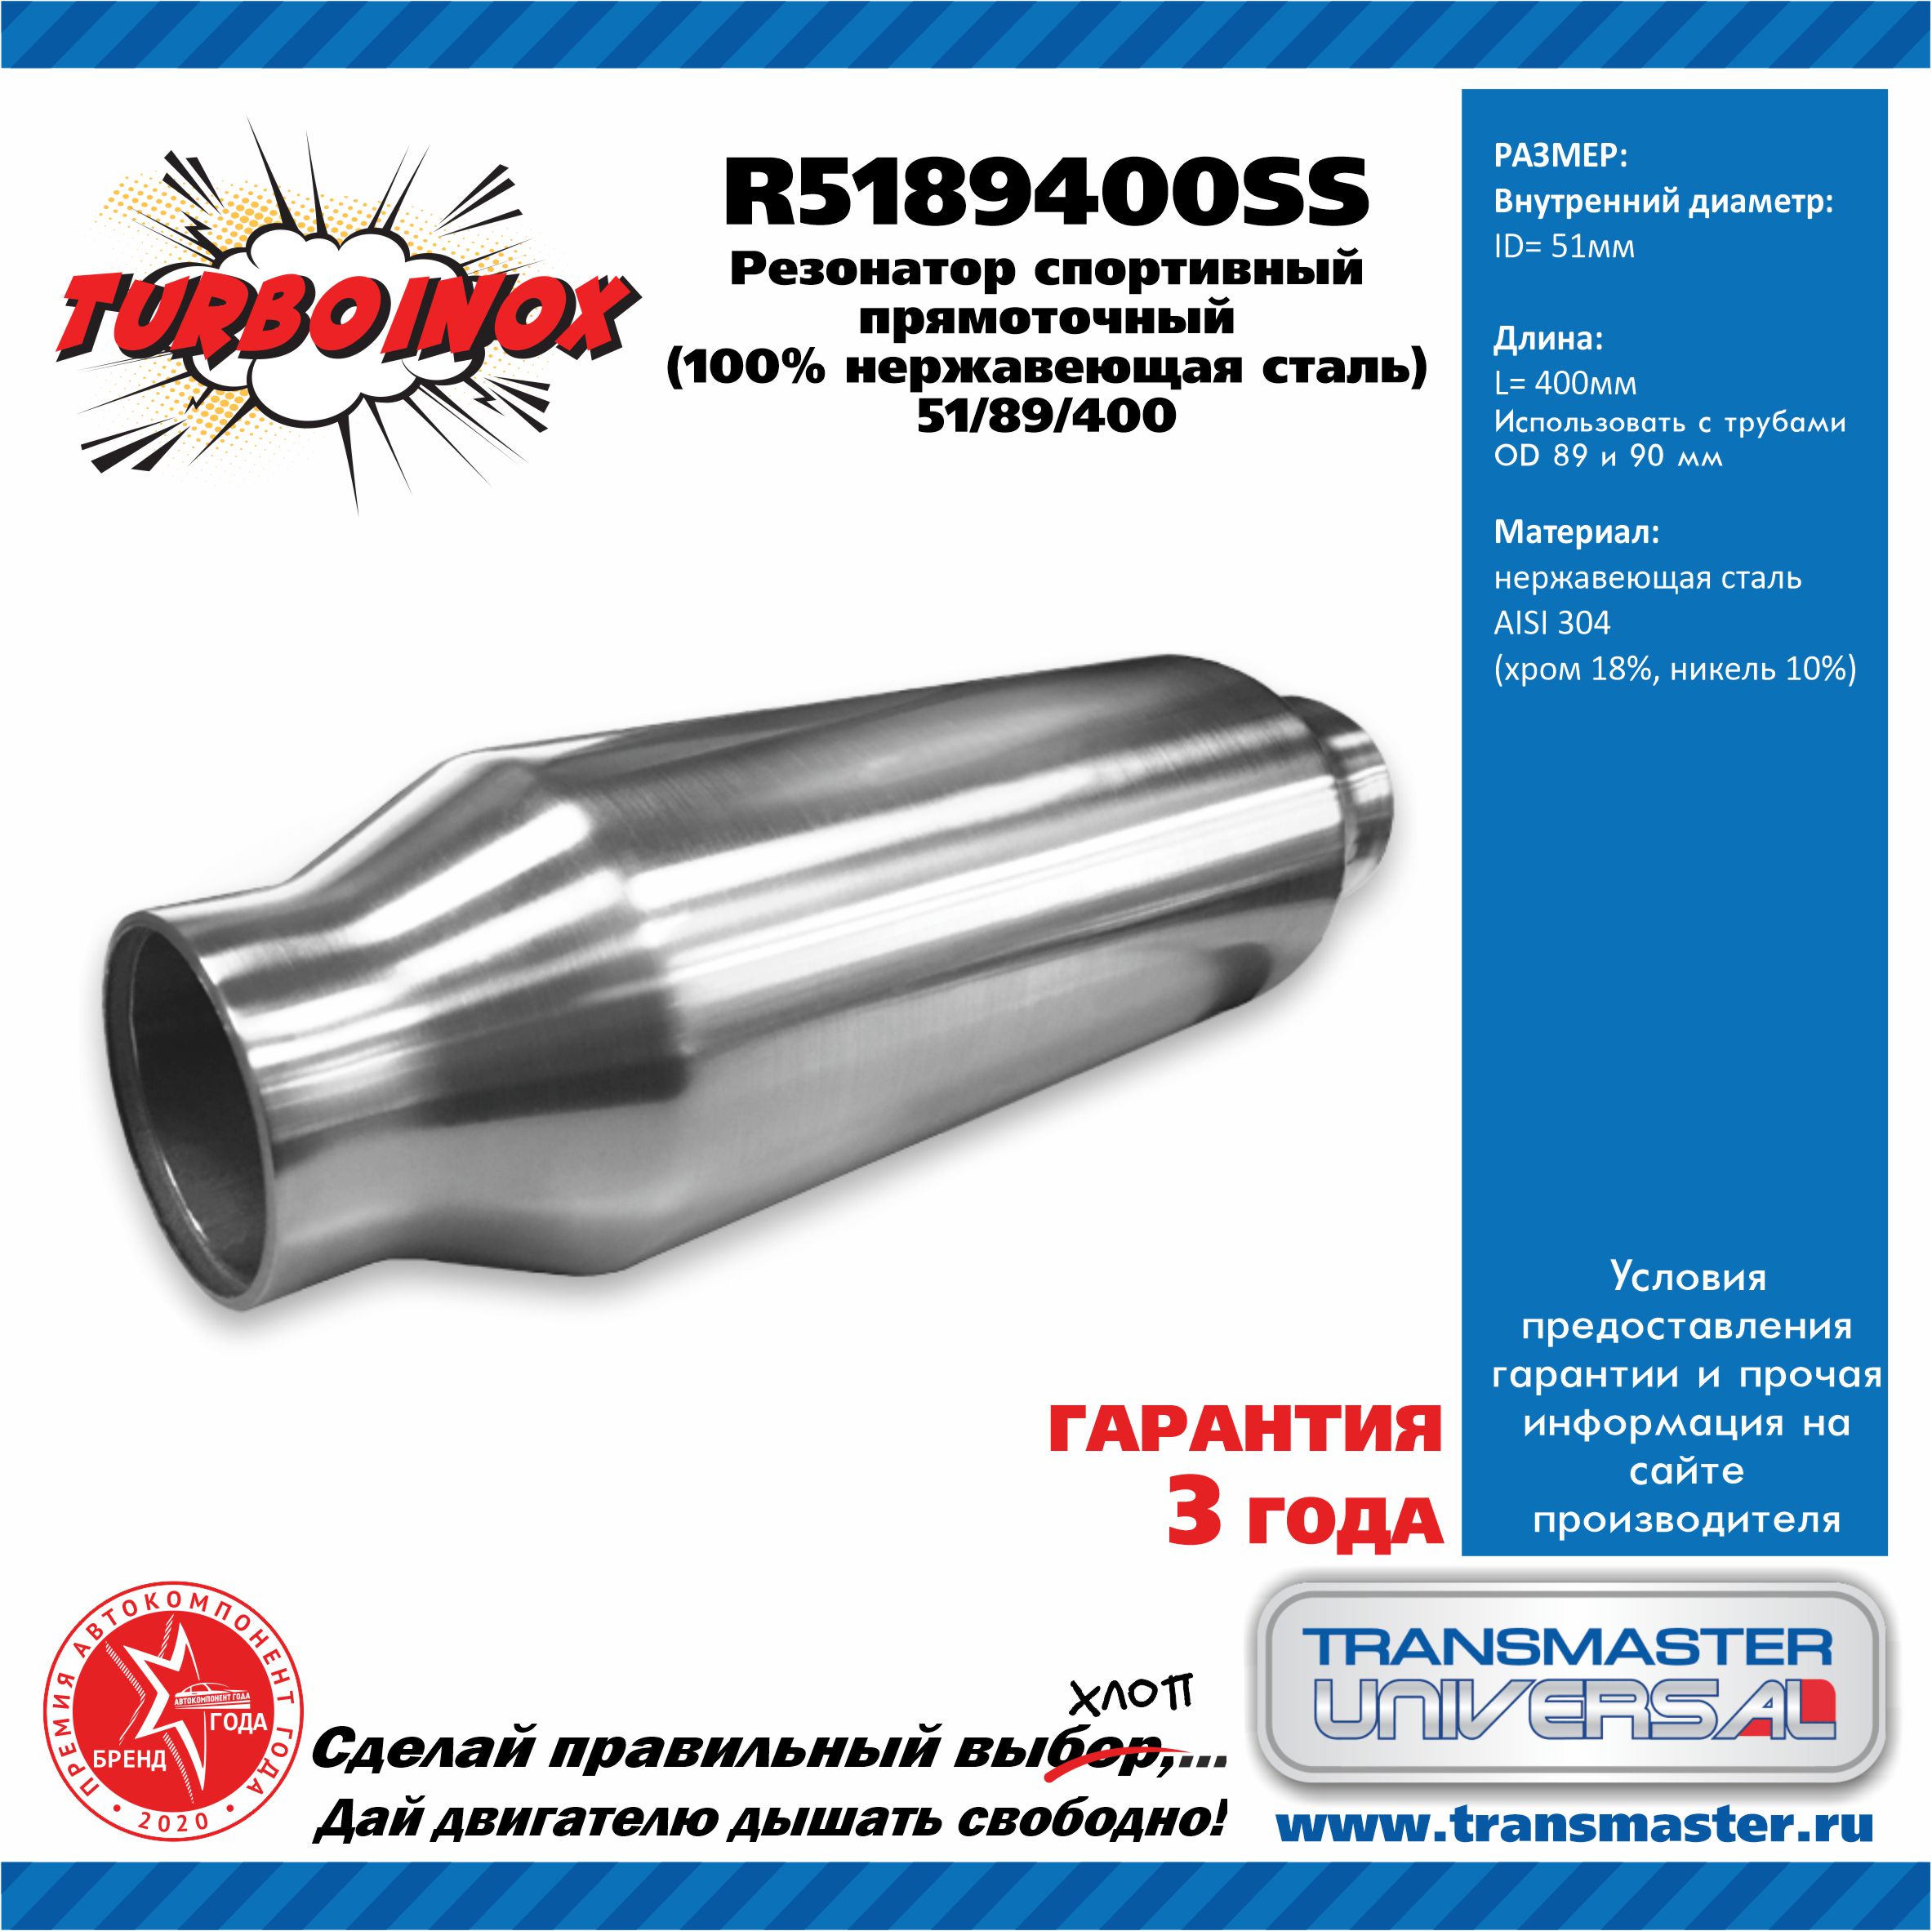 Резонатор спортивный прямоточный серия turboinox (100% нержавеющая сталь) - TRANSMASTER UNIVERSAL R5189400SS